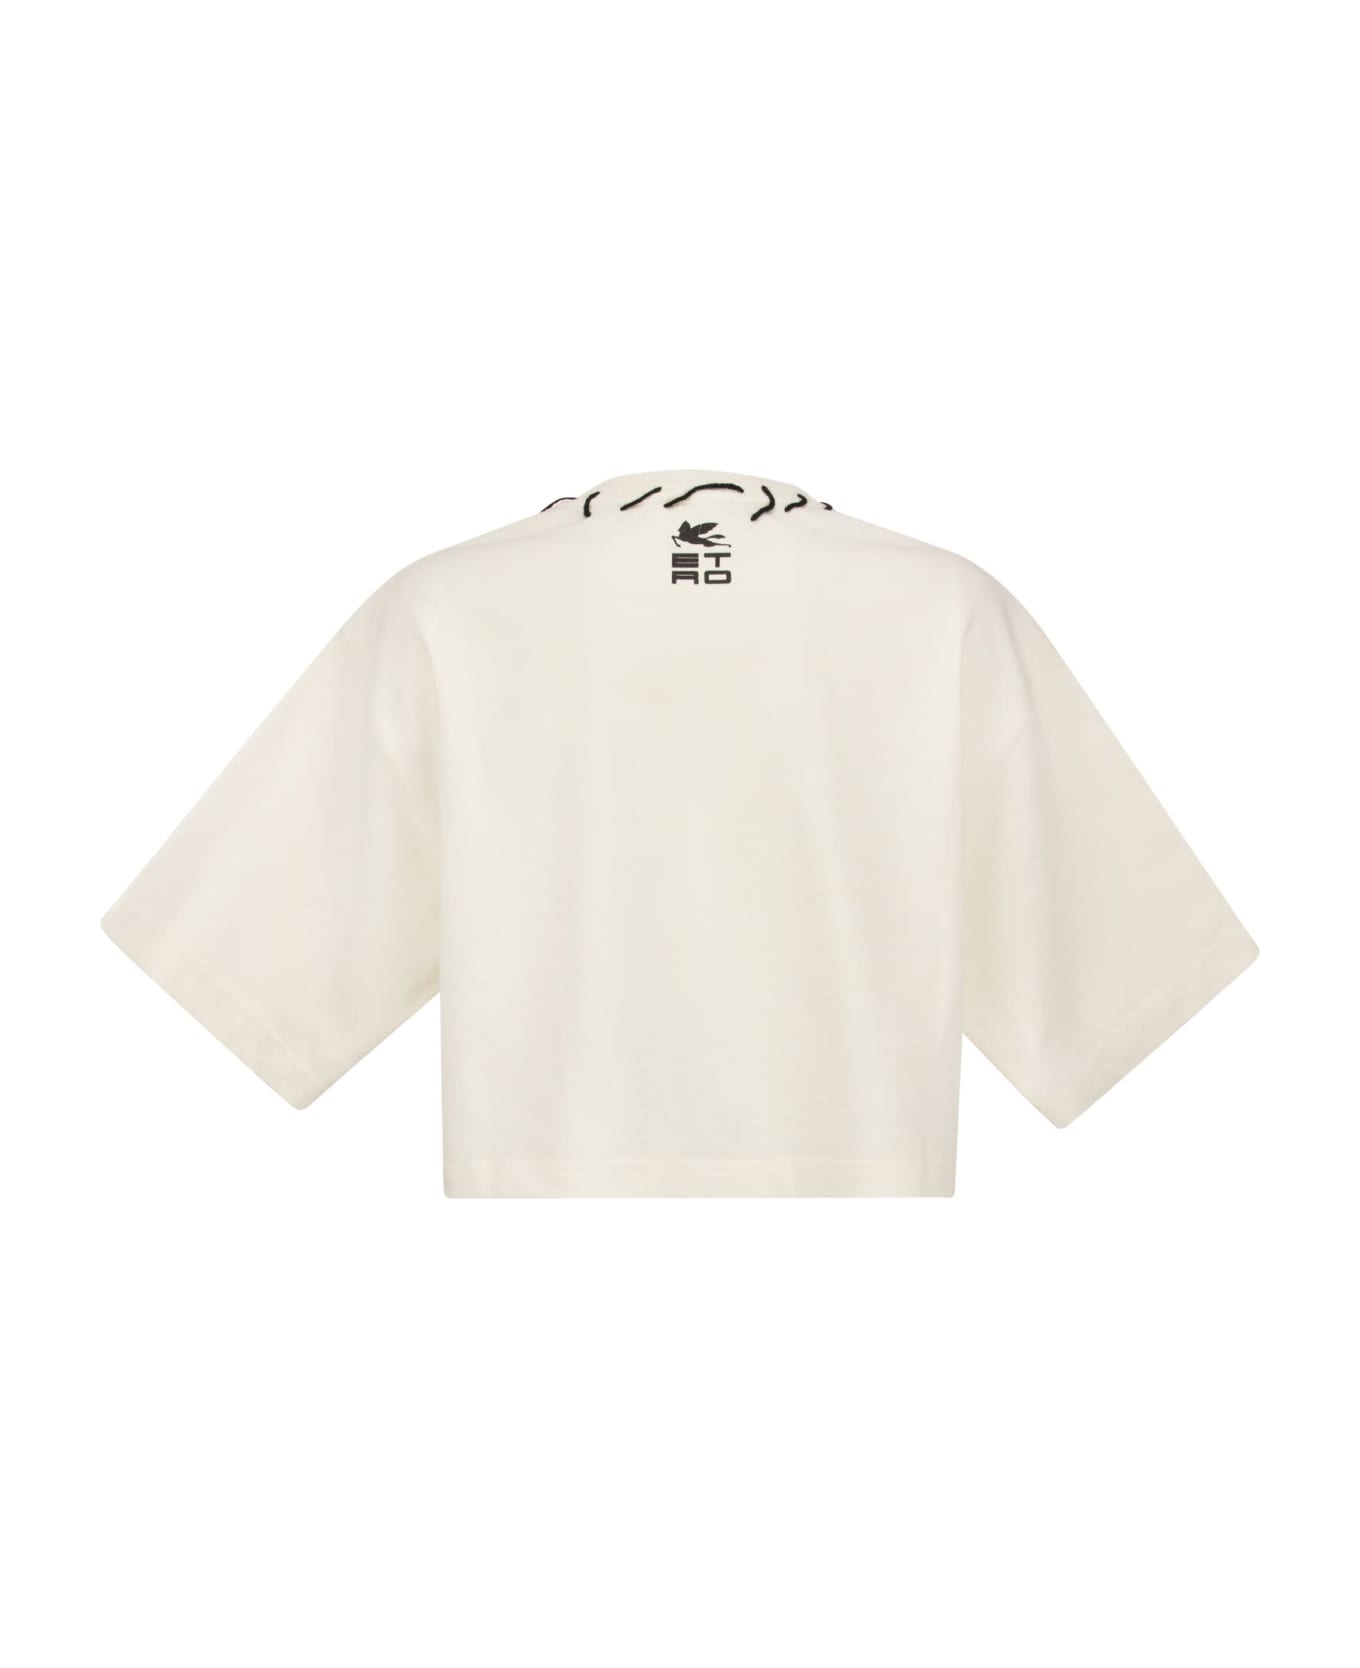 Etro Pegasus T-shirt And Etro Cube Logo - White Tシャツ